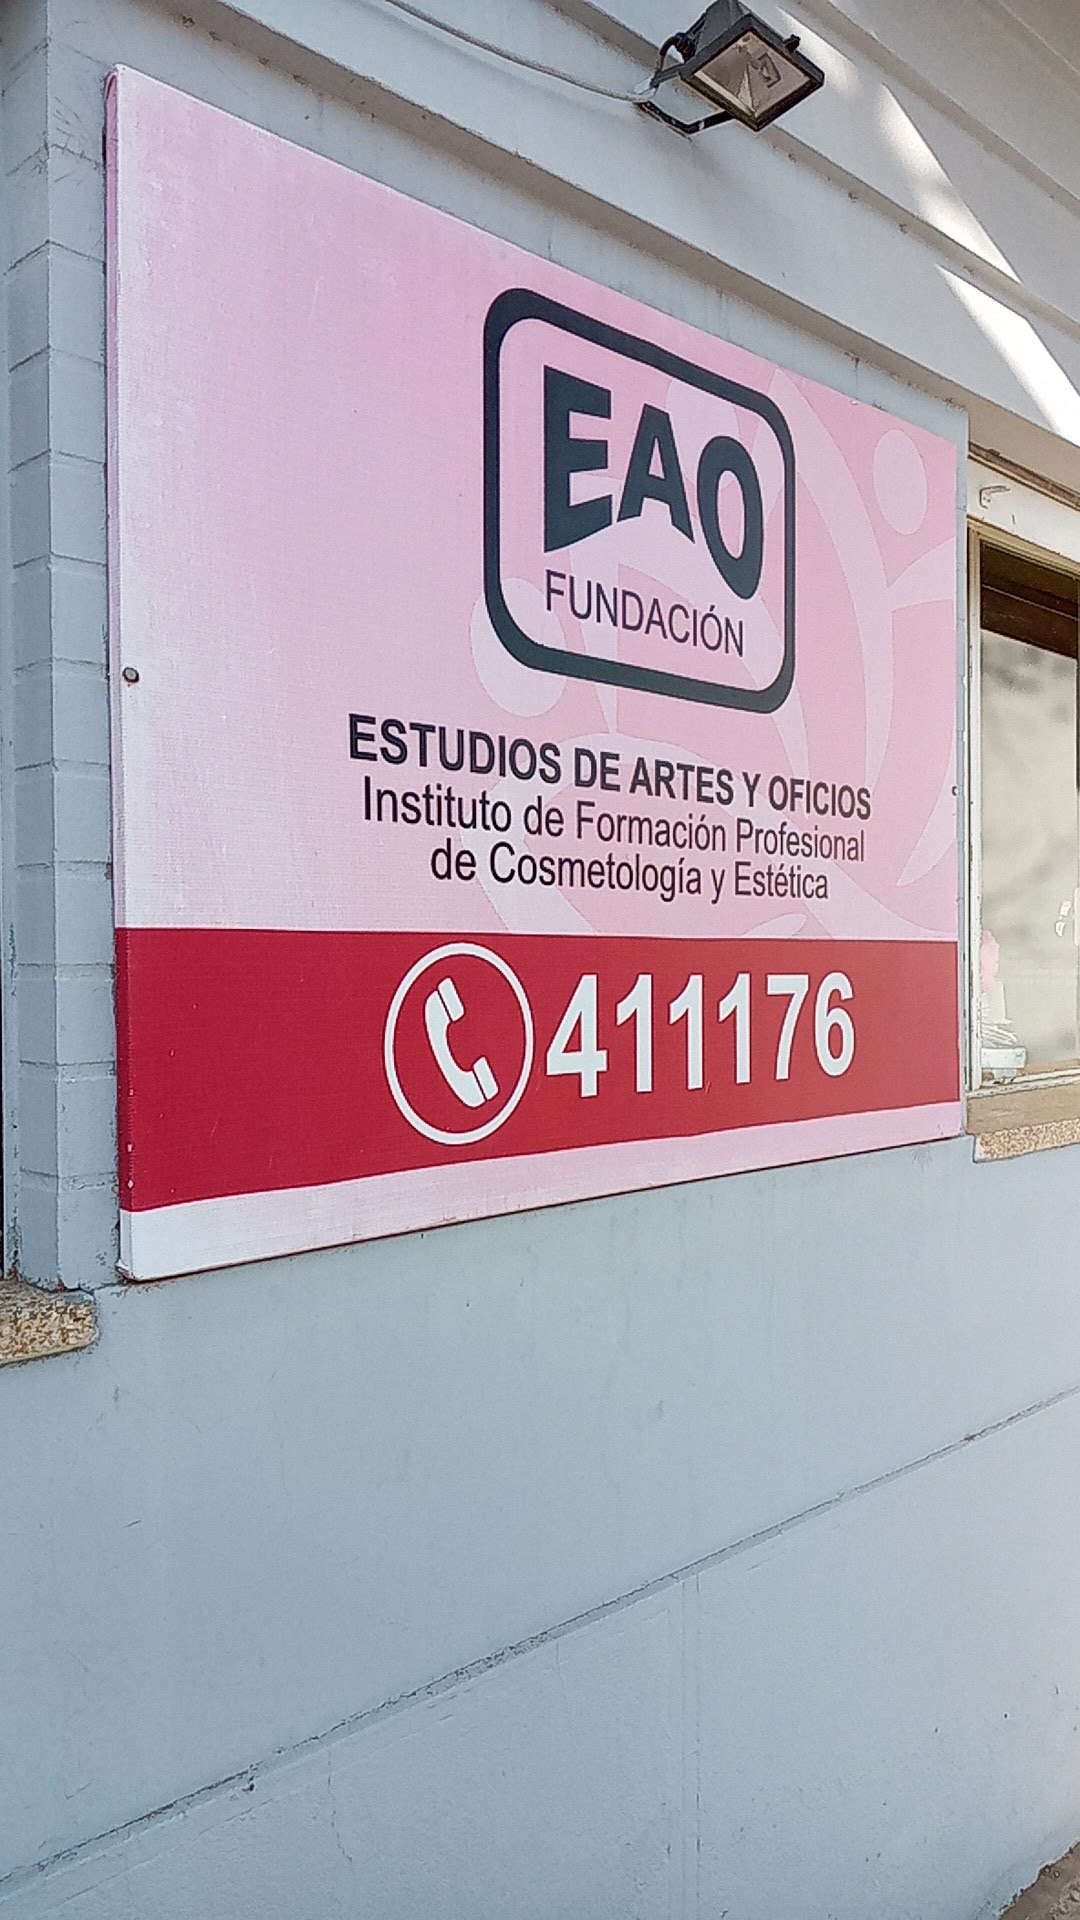 Fundación EAO - Estudios de Artes y Oficios